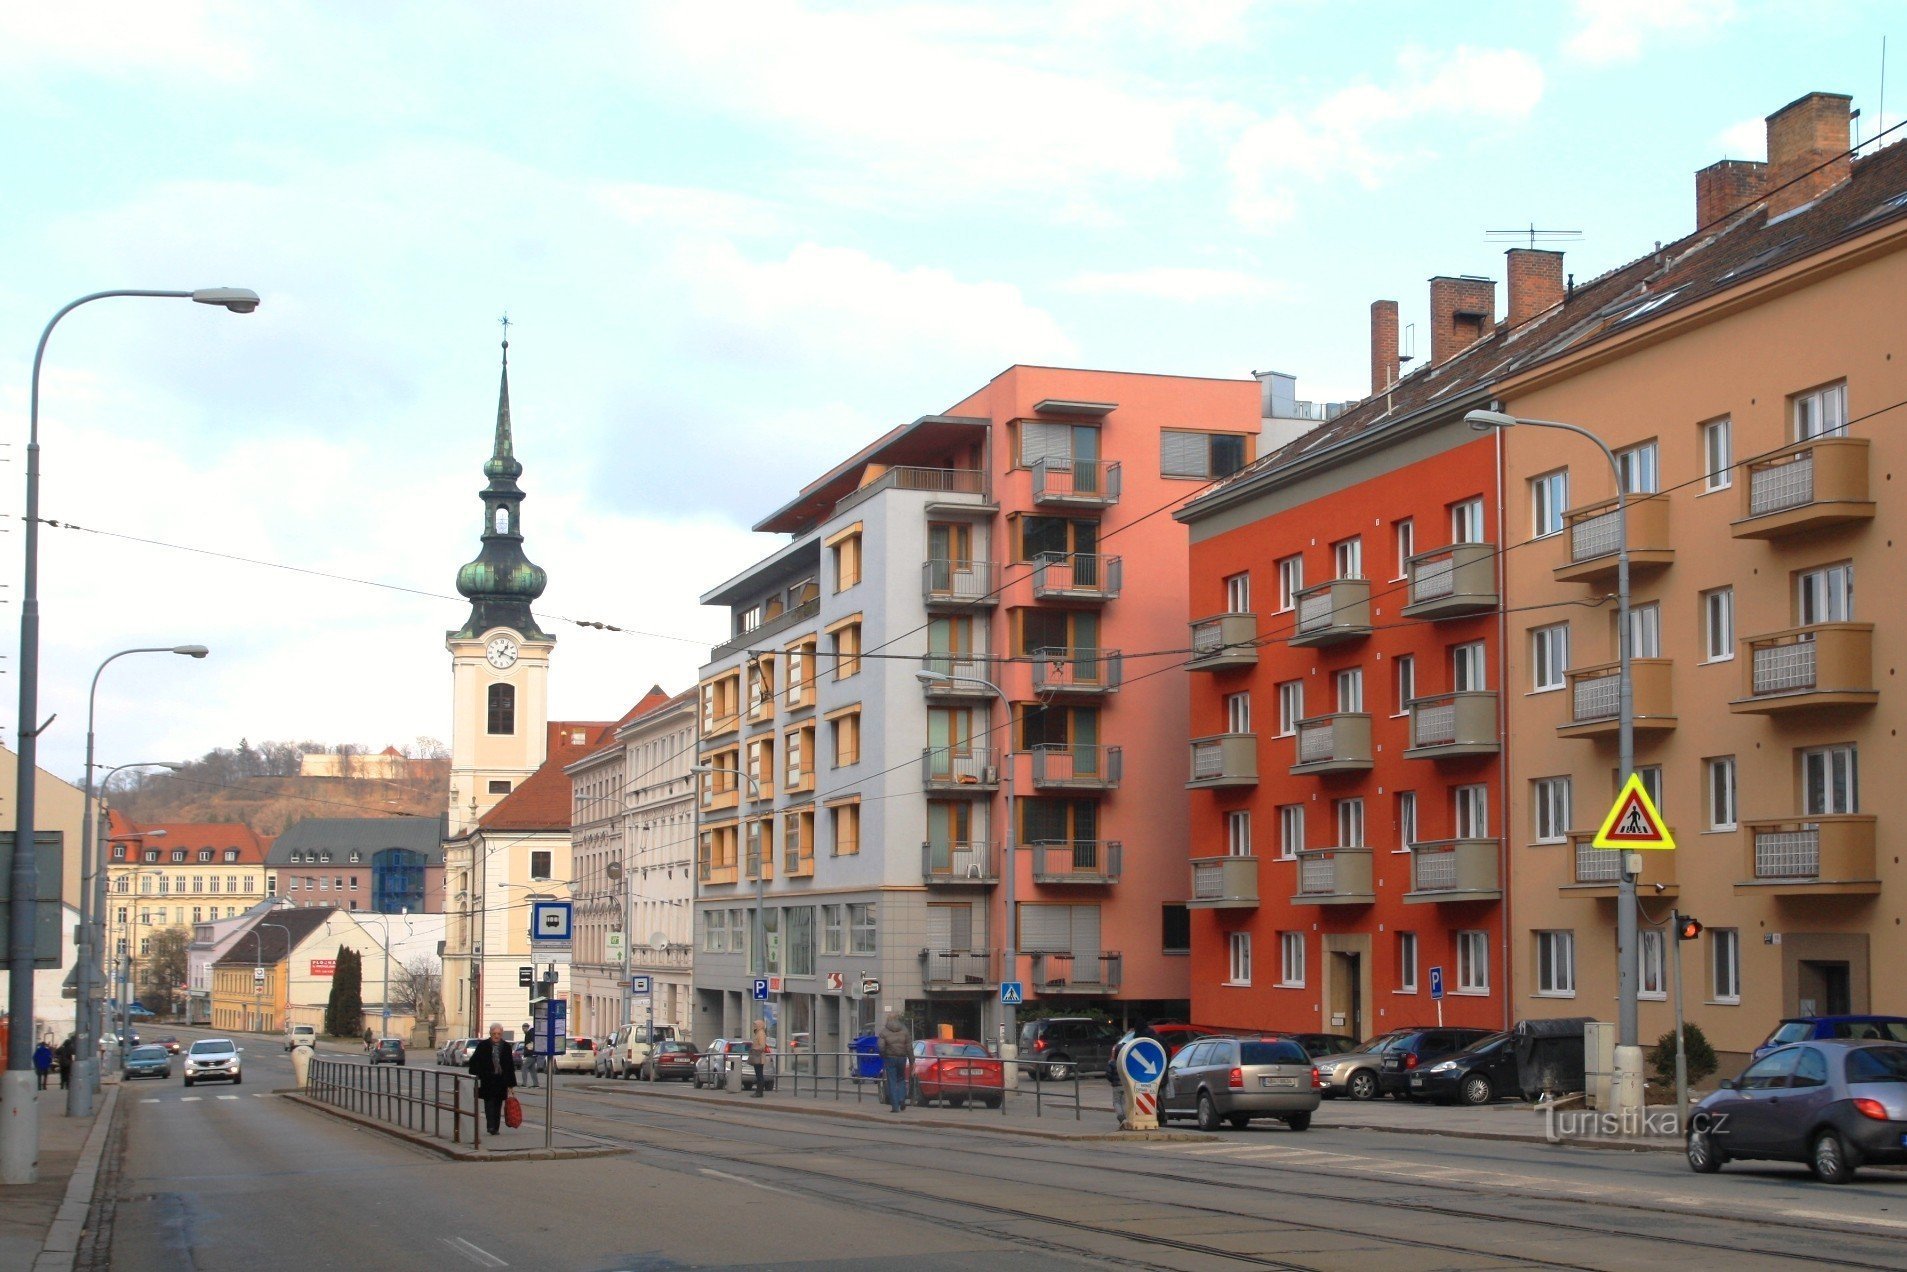 Stajališta javnog prijevoza Milosrdne braće u ulici Vídeňská, u pozadini toranj crkve sv. Leopold